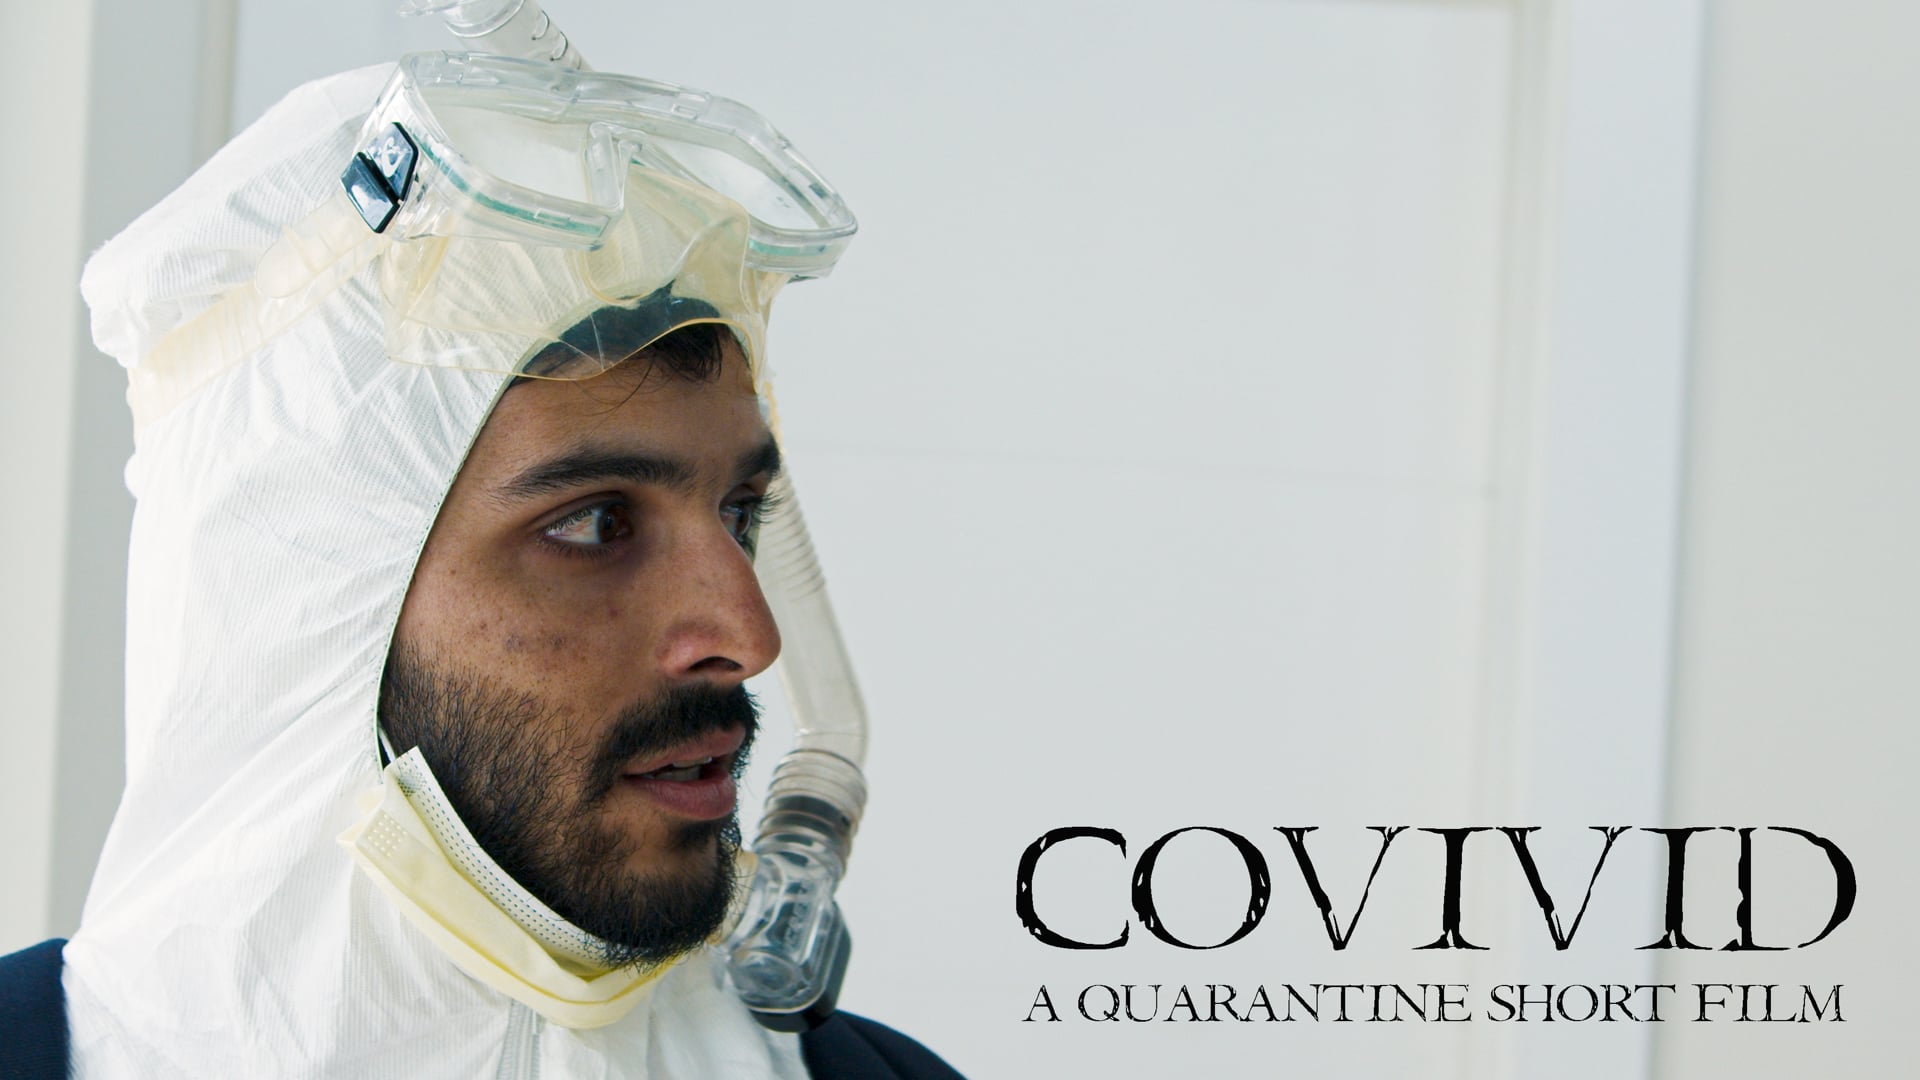 Corona Virus | Comedy Horror Short Film | COVIVID